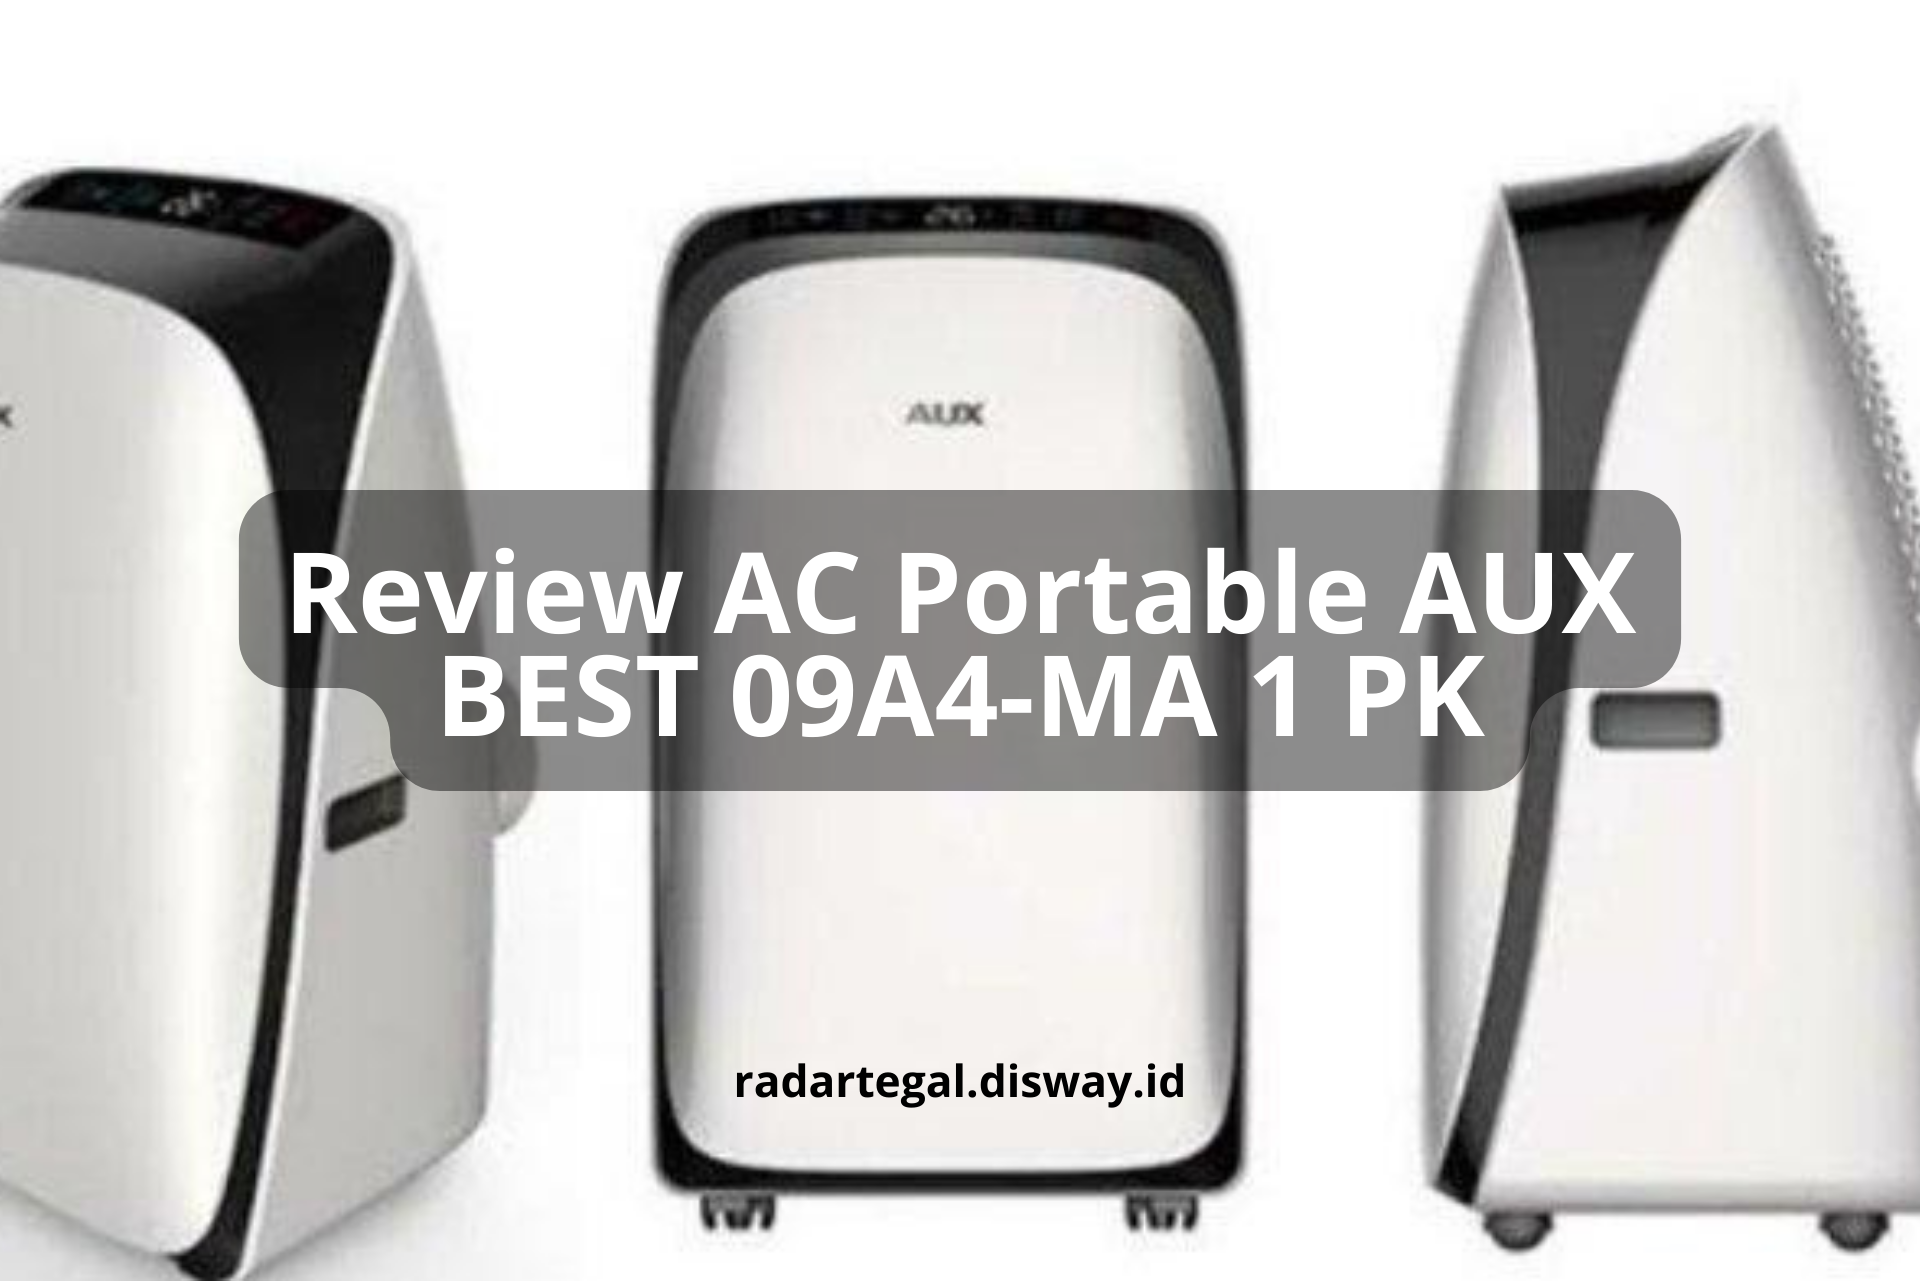 Review AC Portable AUX BEST 09A4-MA 1 PK, AC dengan Desain Kekinian yang Aesthetic